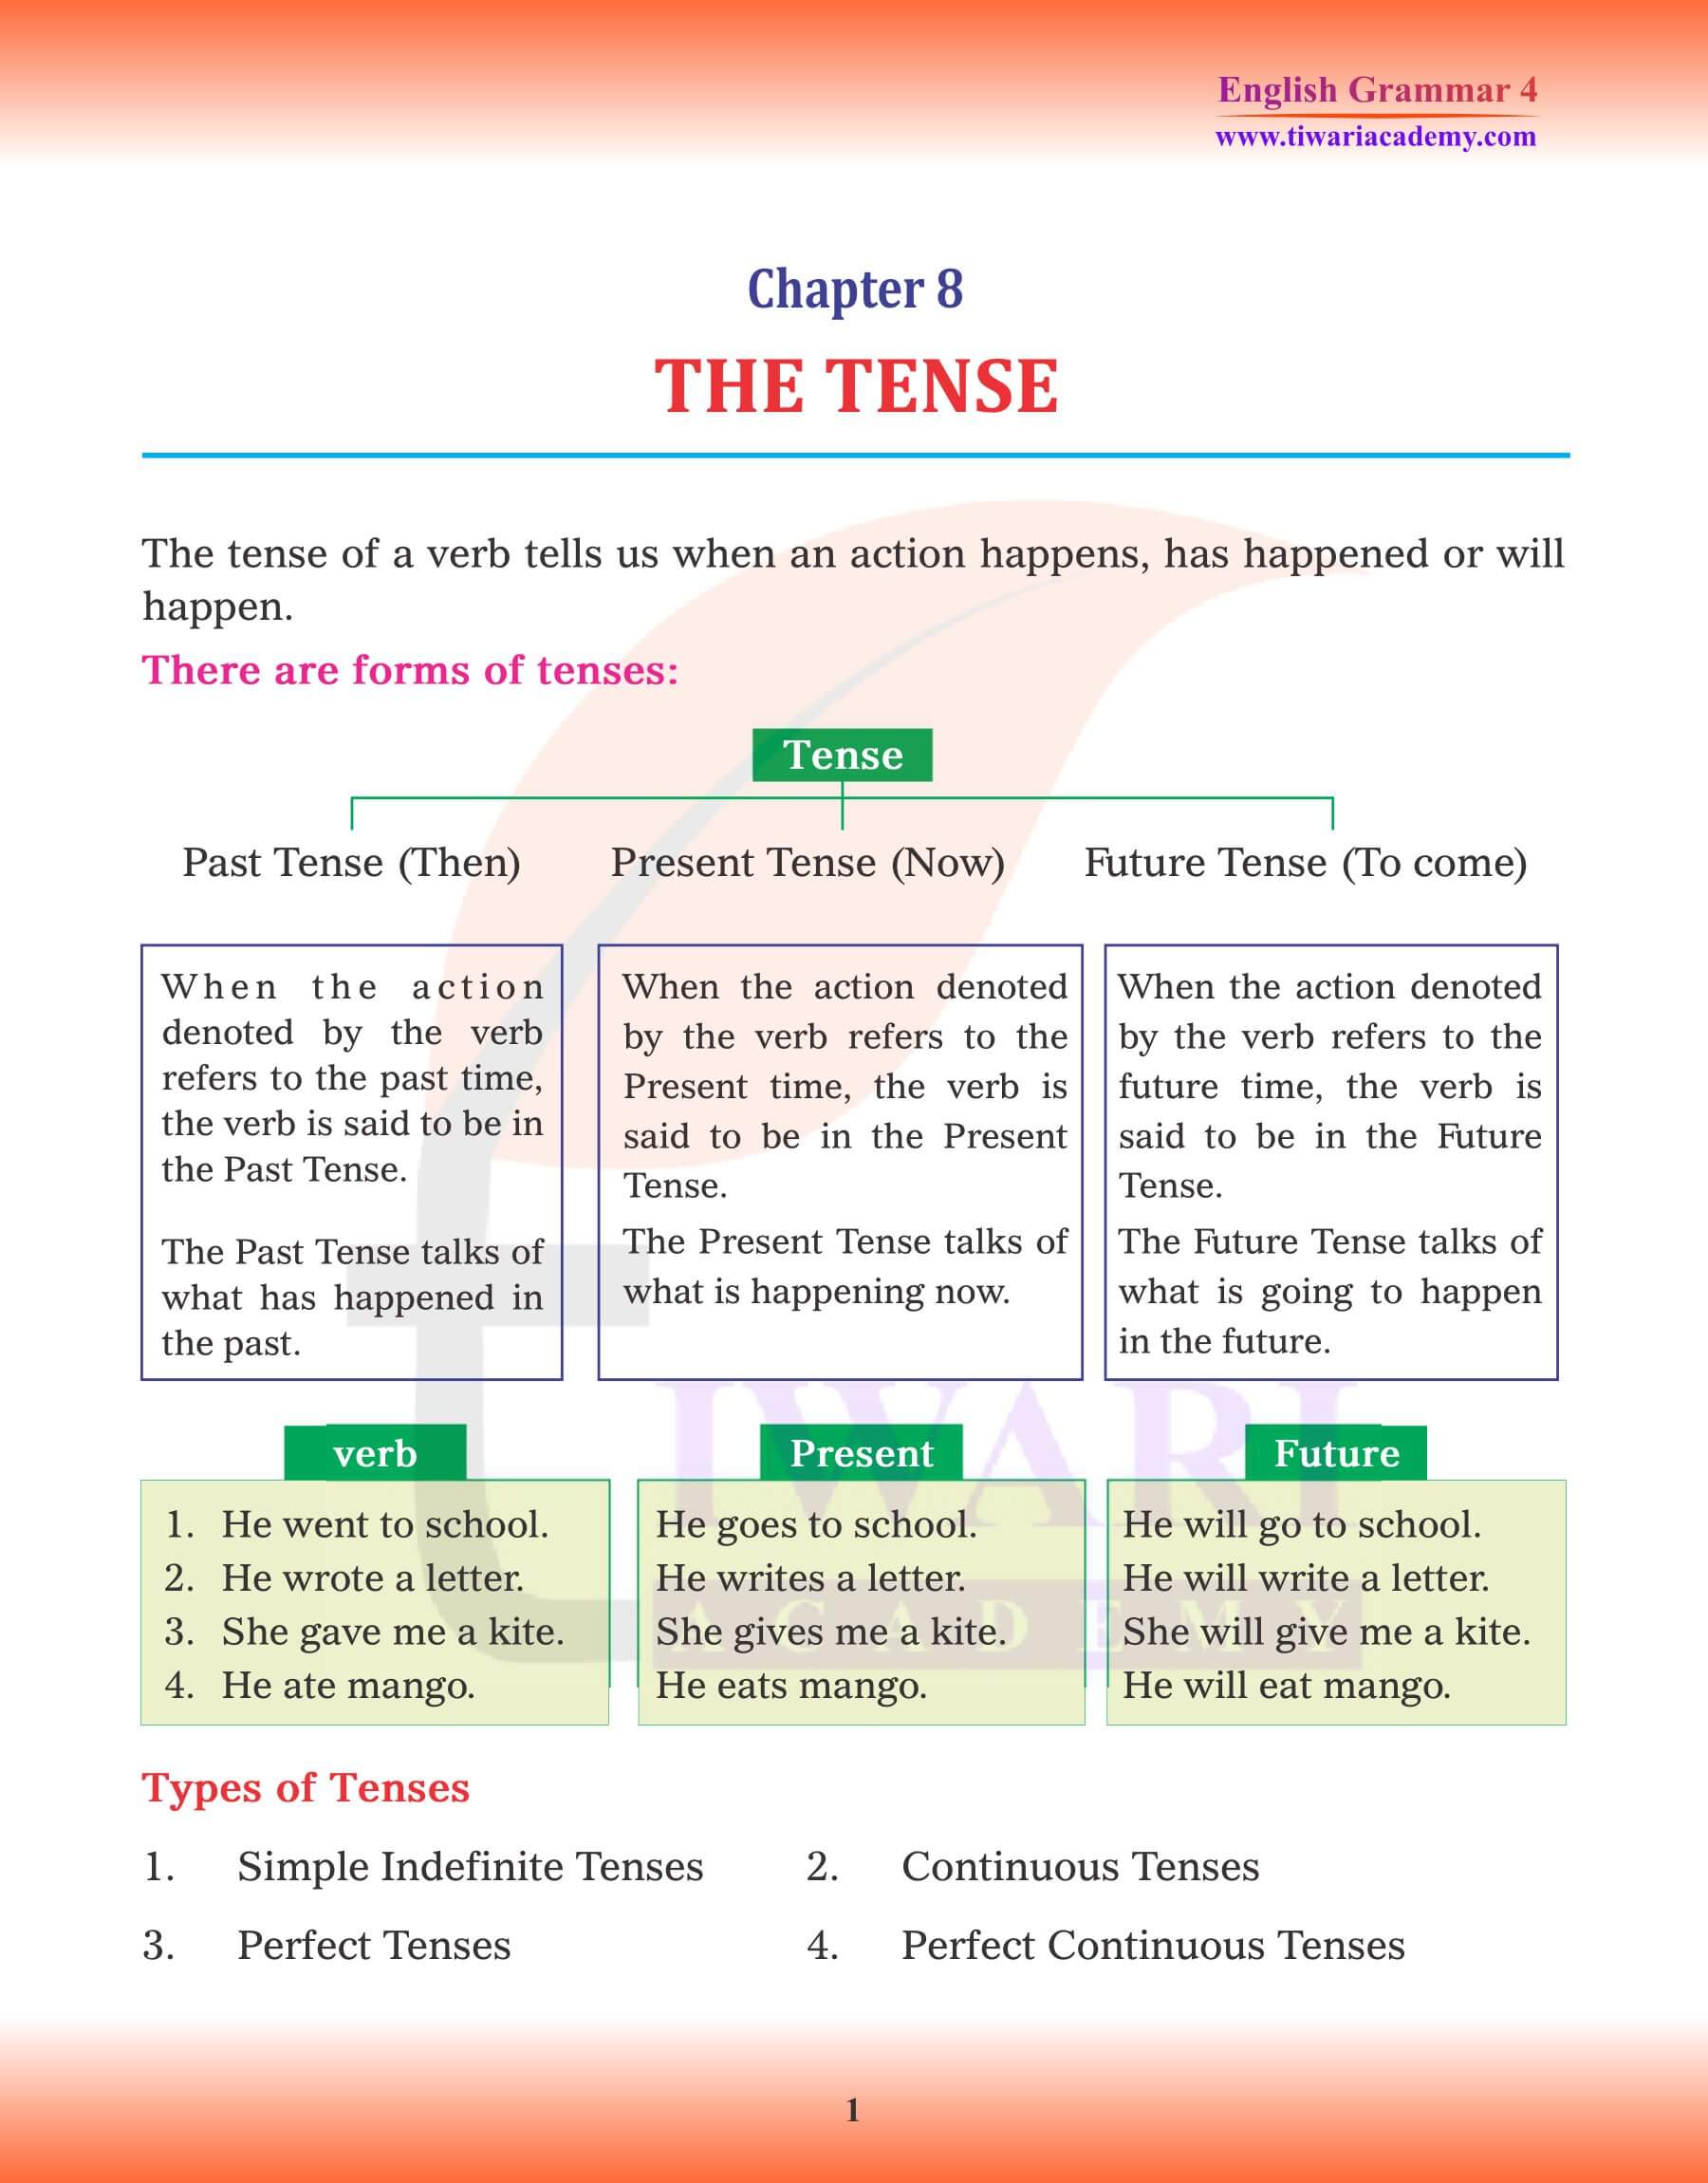 Class 4 English Grammar Chapter 8 Tense